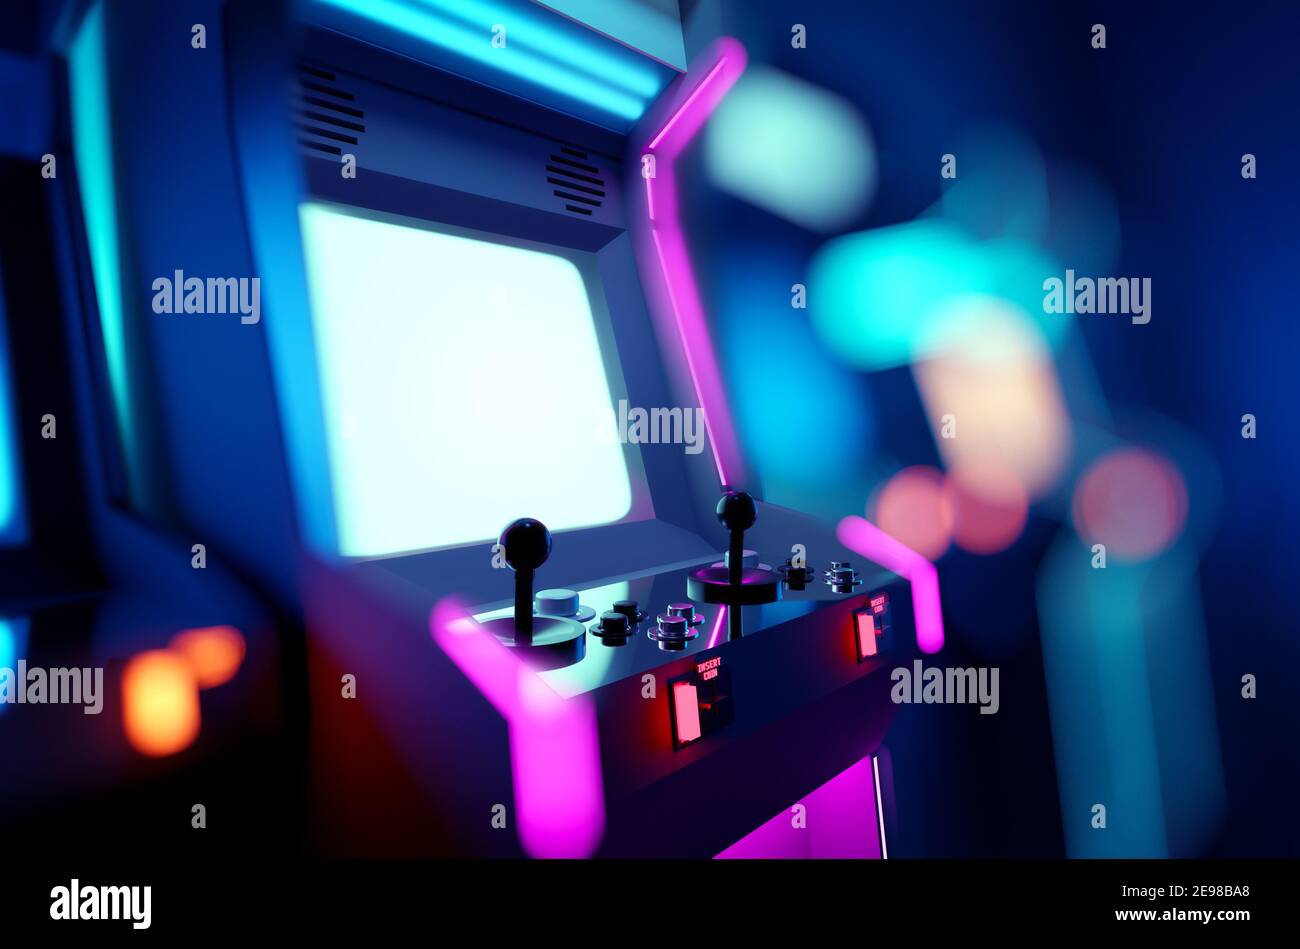 Retrò neon incandescente macchine arcade in una sala giochi. Illustrazione del rendering 3D. Foto Stock